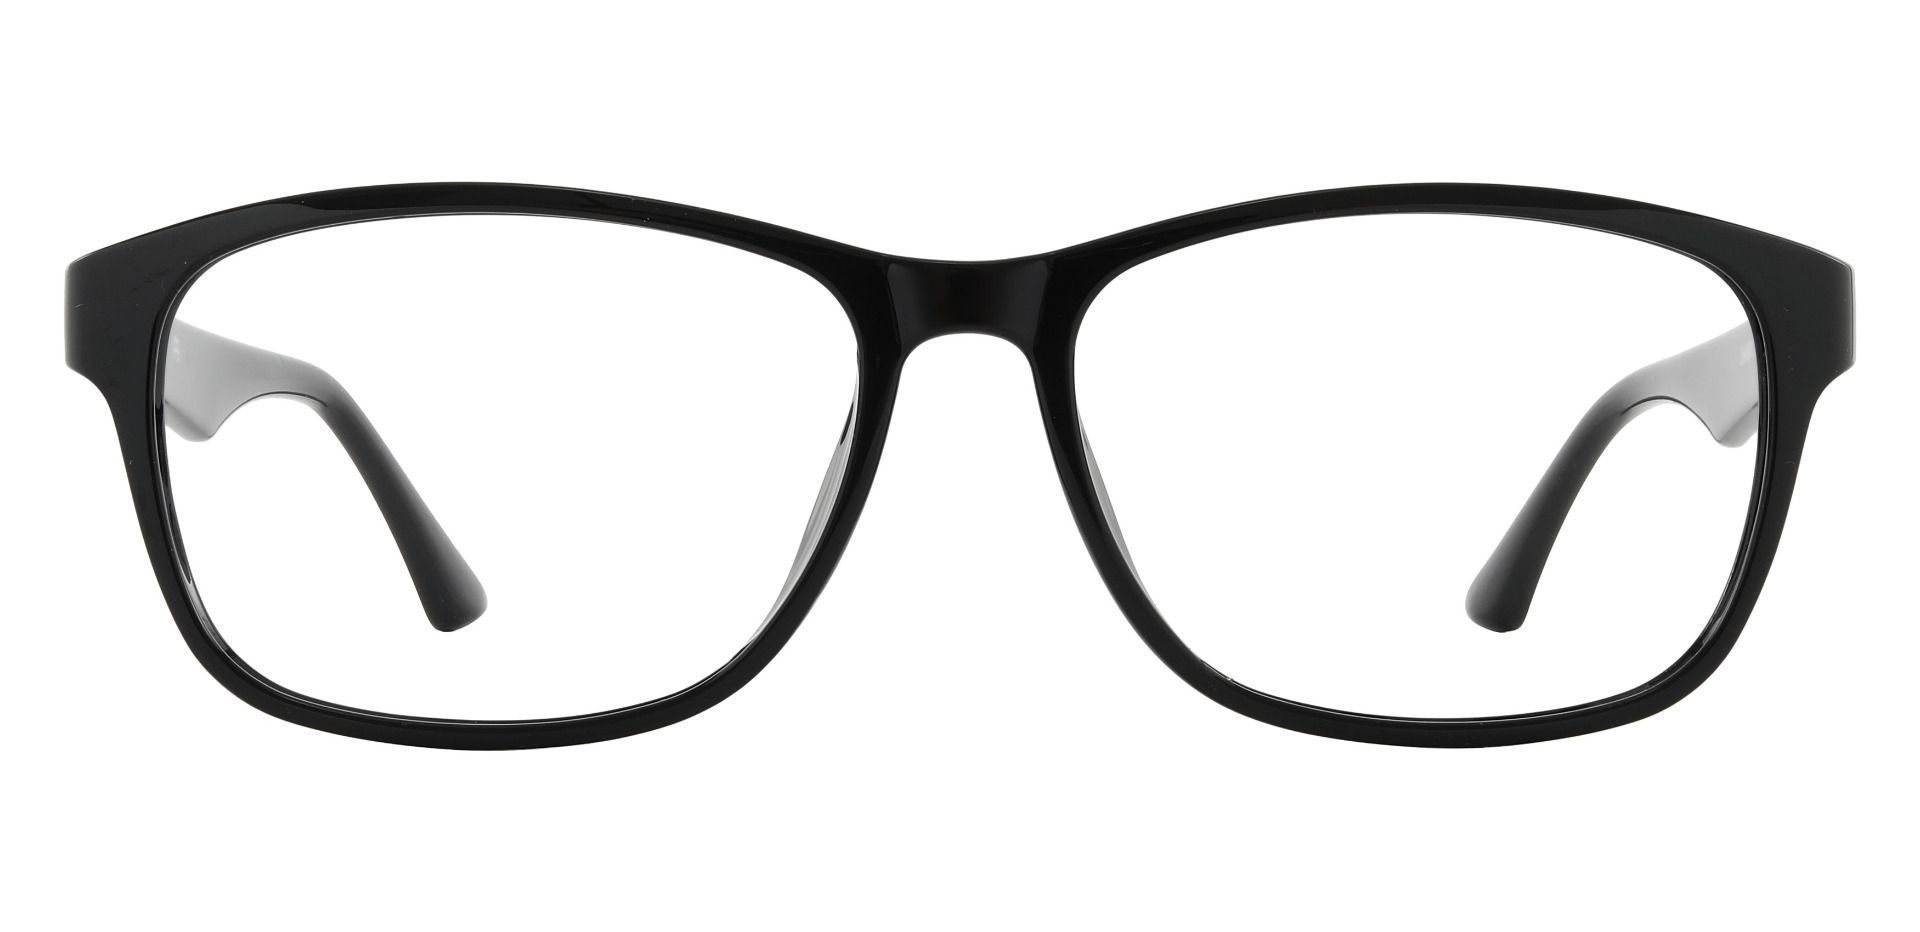 Gallatin Rectangle Prescription Glasses - Black